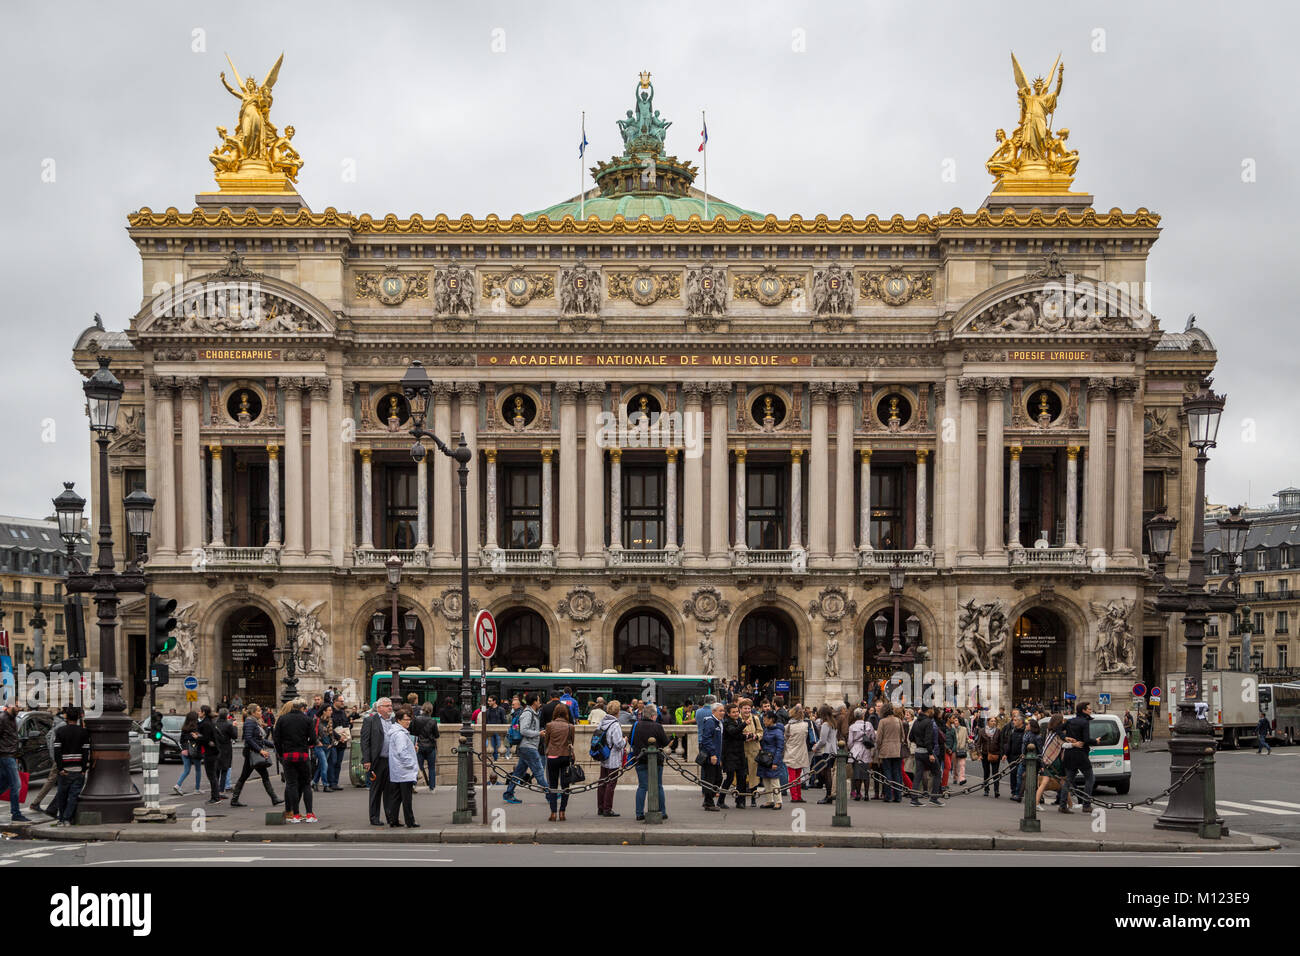 L'Opéra de Paris, Opéra National de Paris, Opéra Garnier, Palais Garnier,Paris,France Banque D'Images